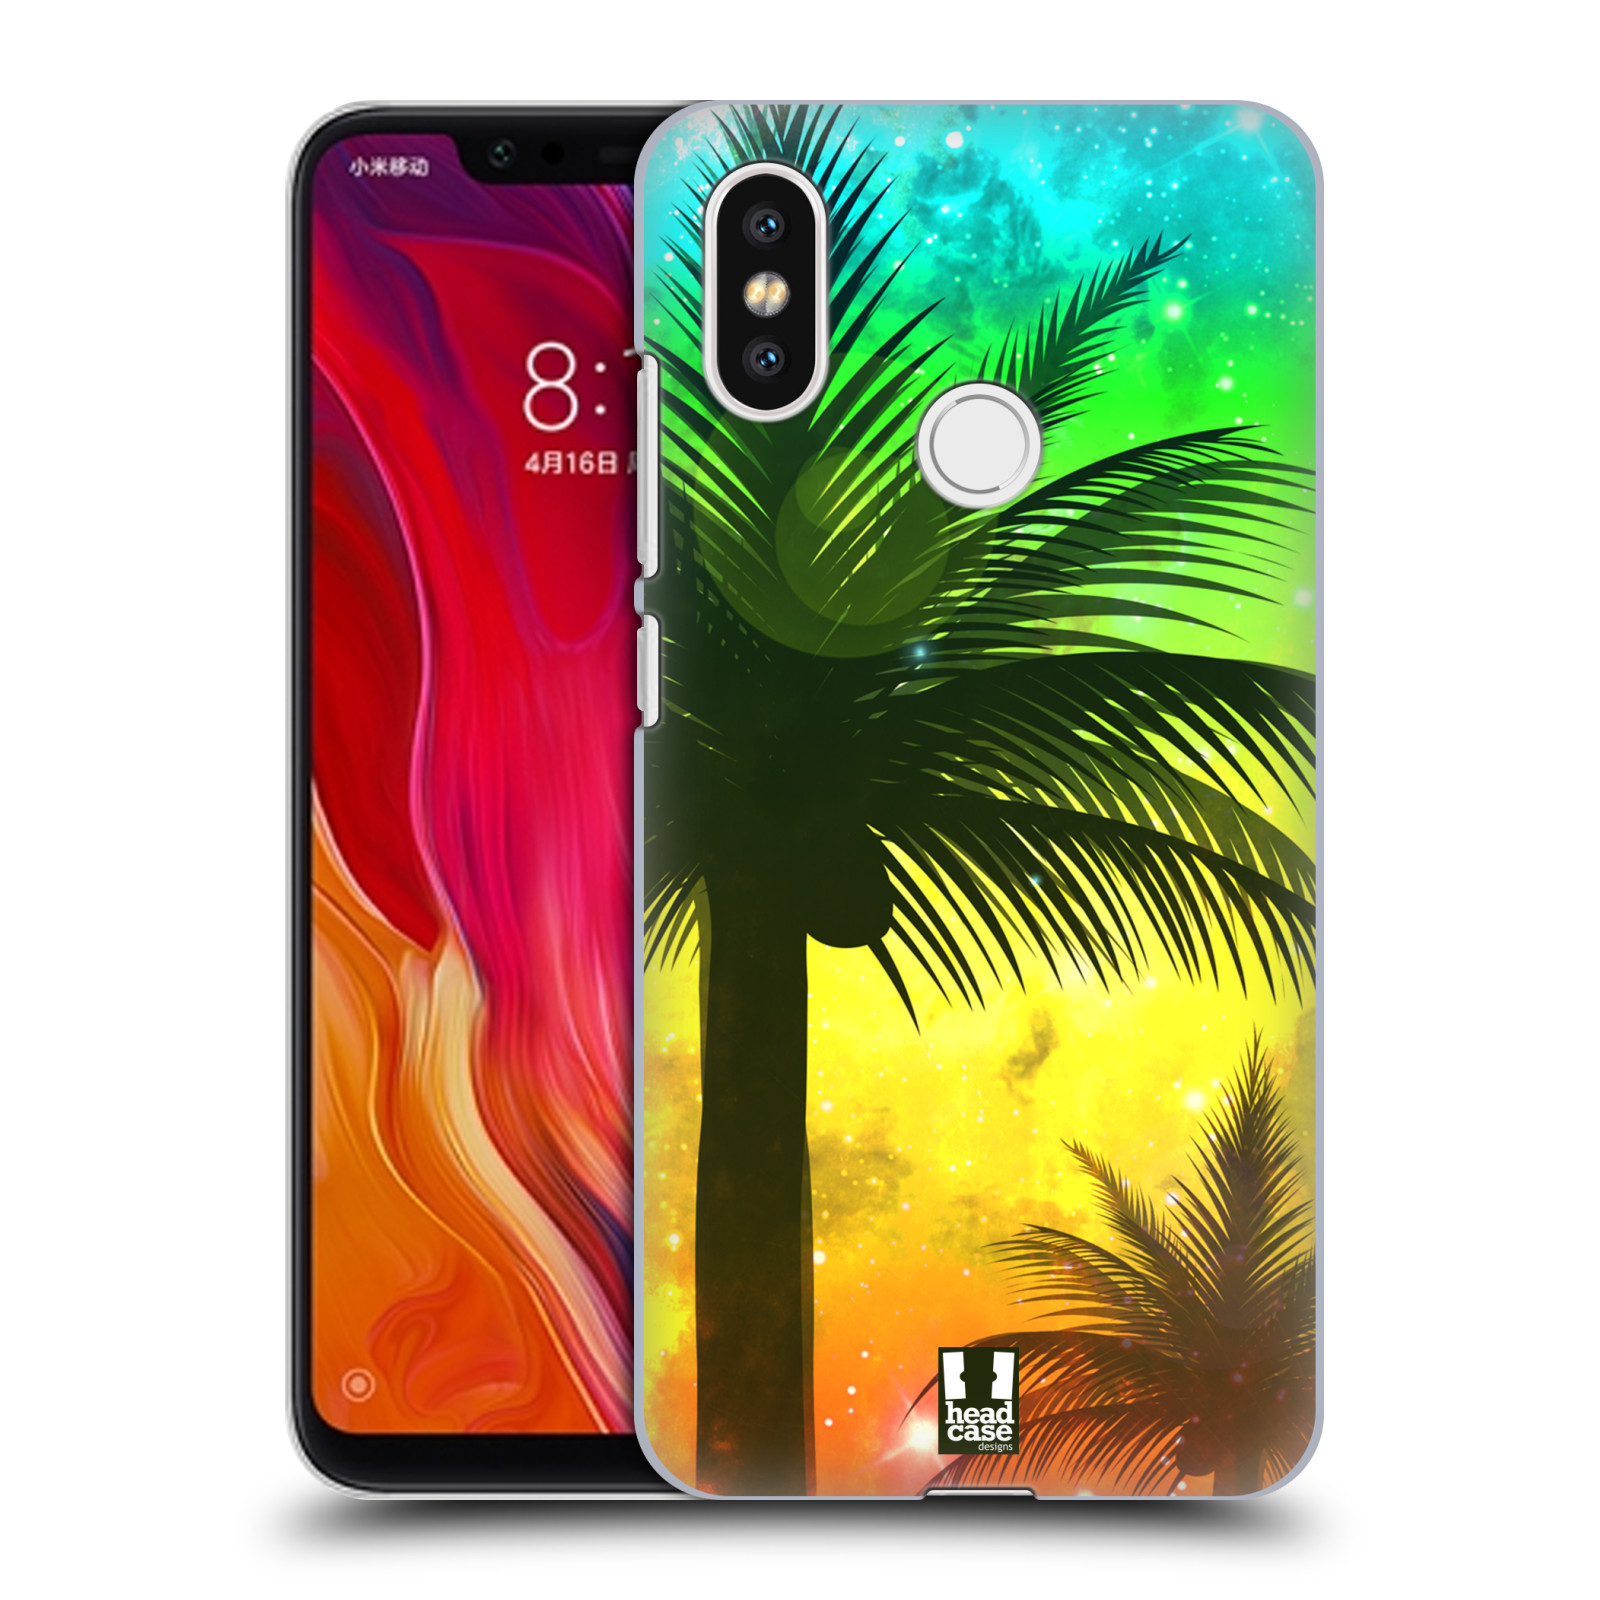 HEAD CASE plastový obal na mobil Xiaomi Mi 8 vzor Kreslený motiv silueta moře a palmy ZELENÁ A ORANŽOVÁ